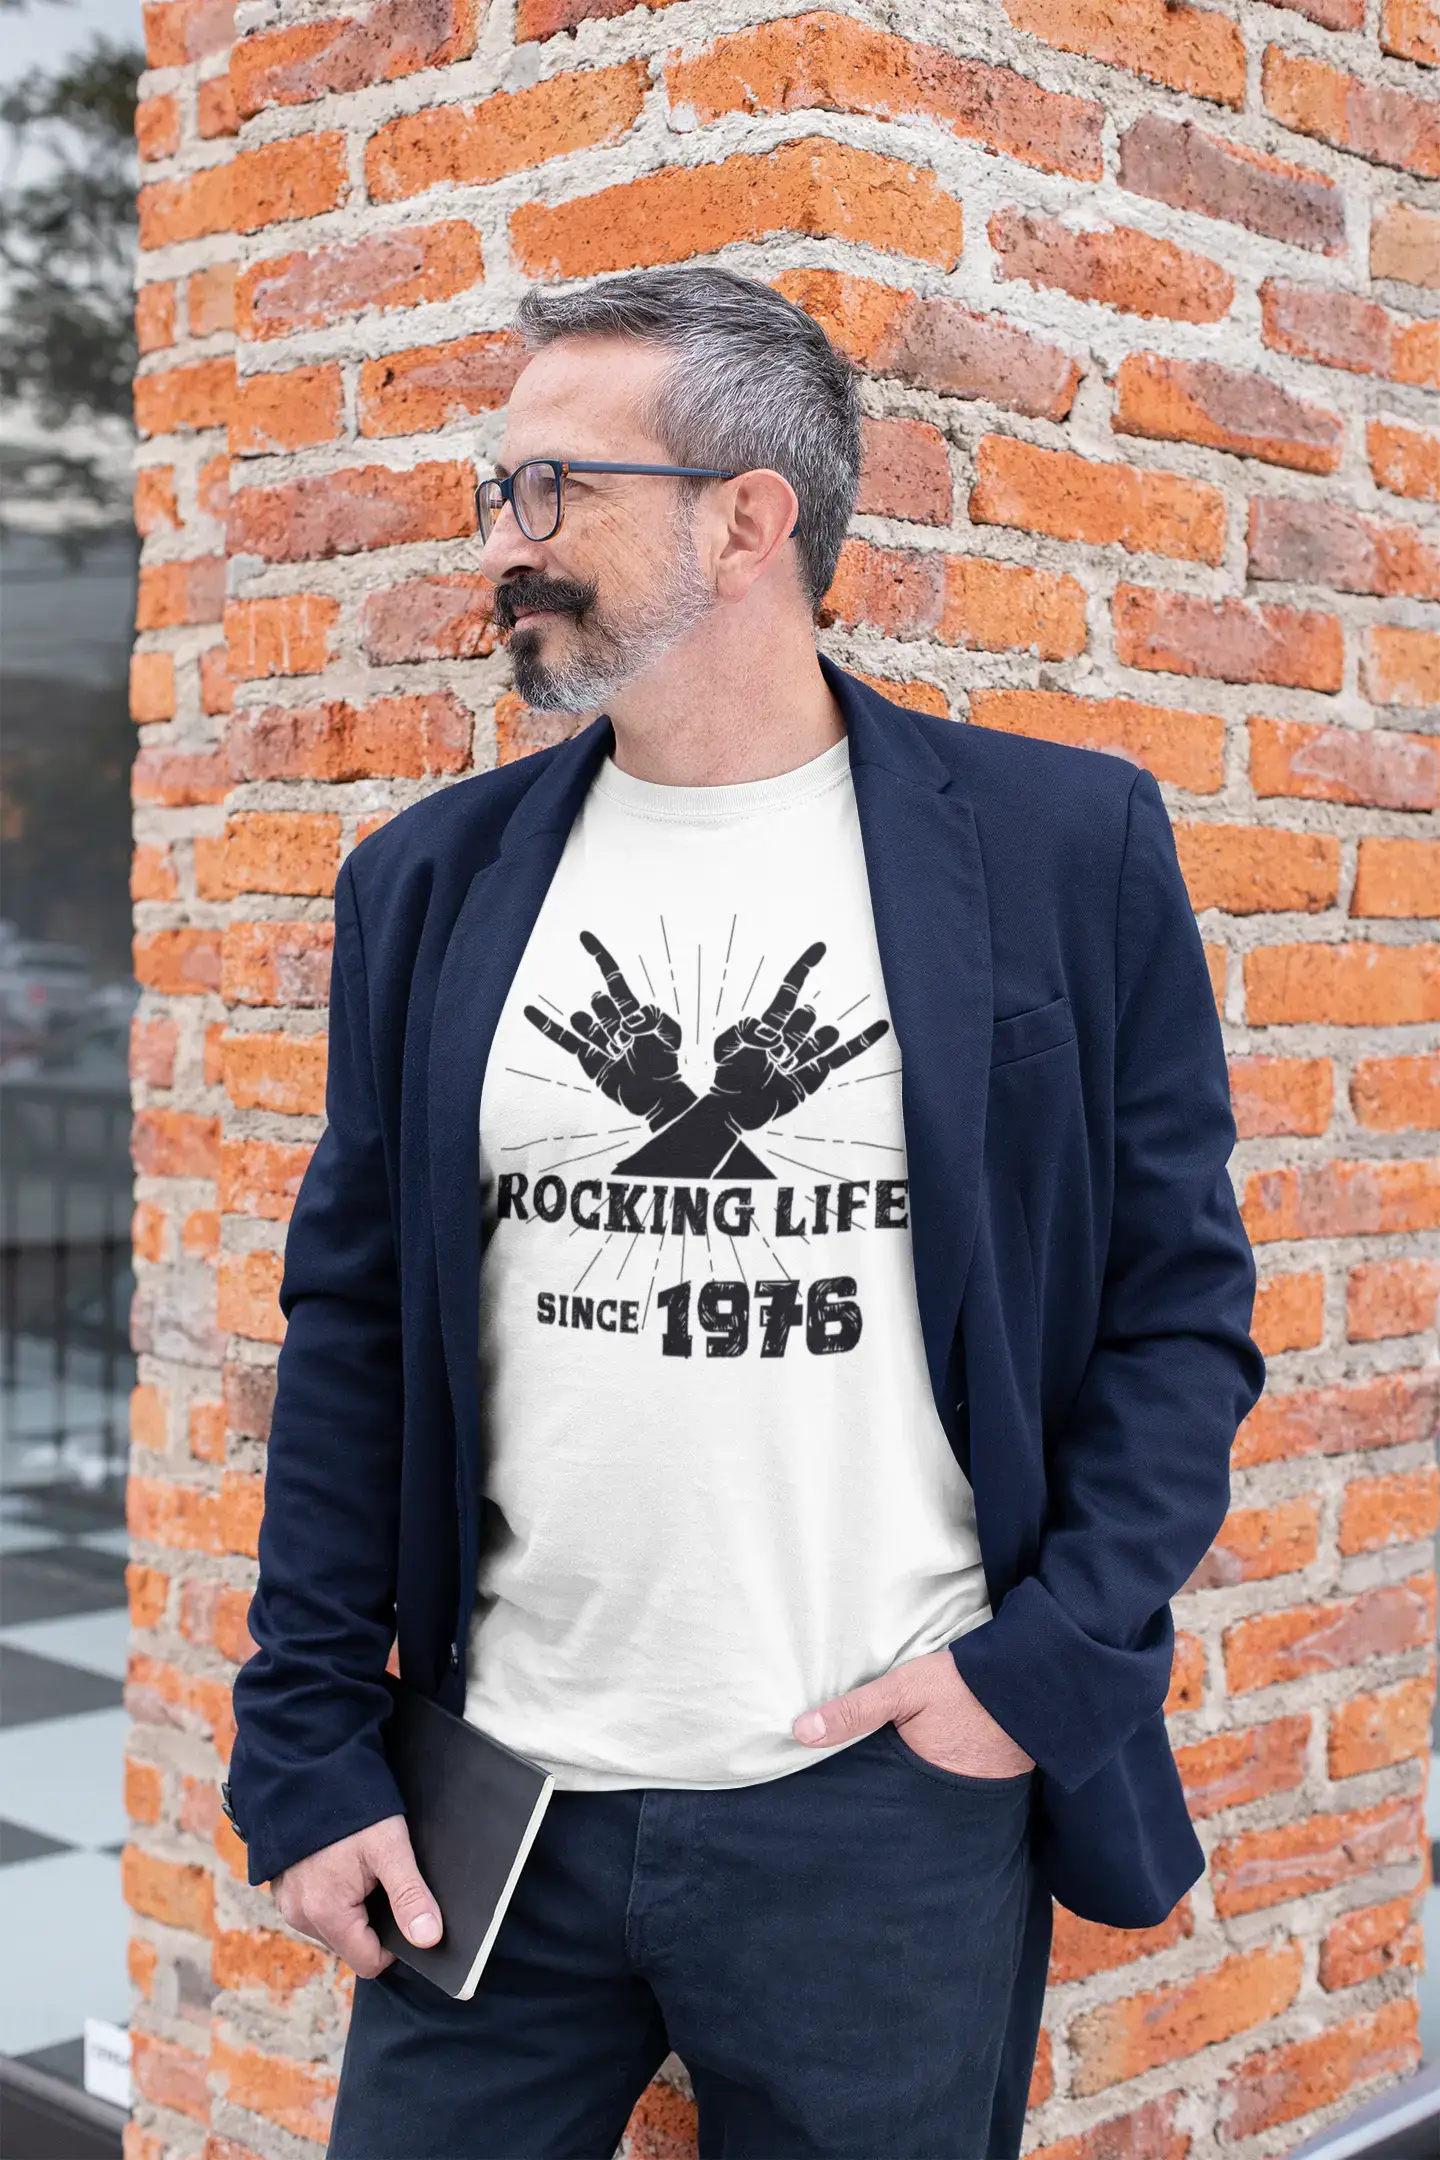 Rocking Life Since 1976 Herren T-Shirt Weiß Geburtstagsgeschenk 00400